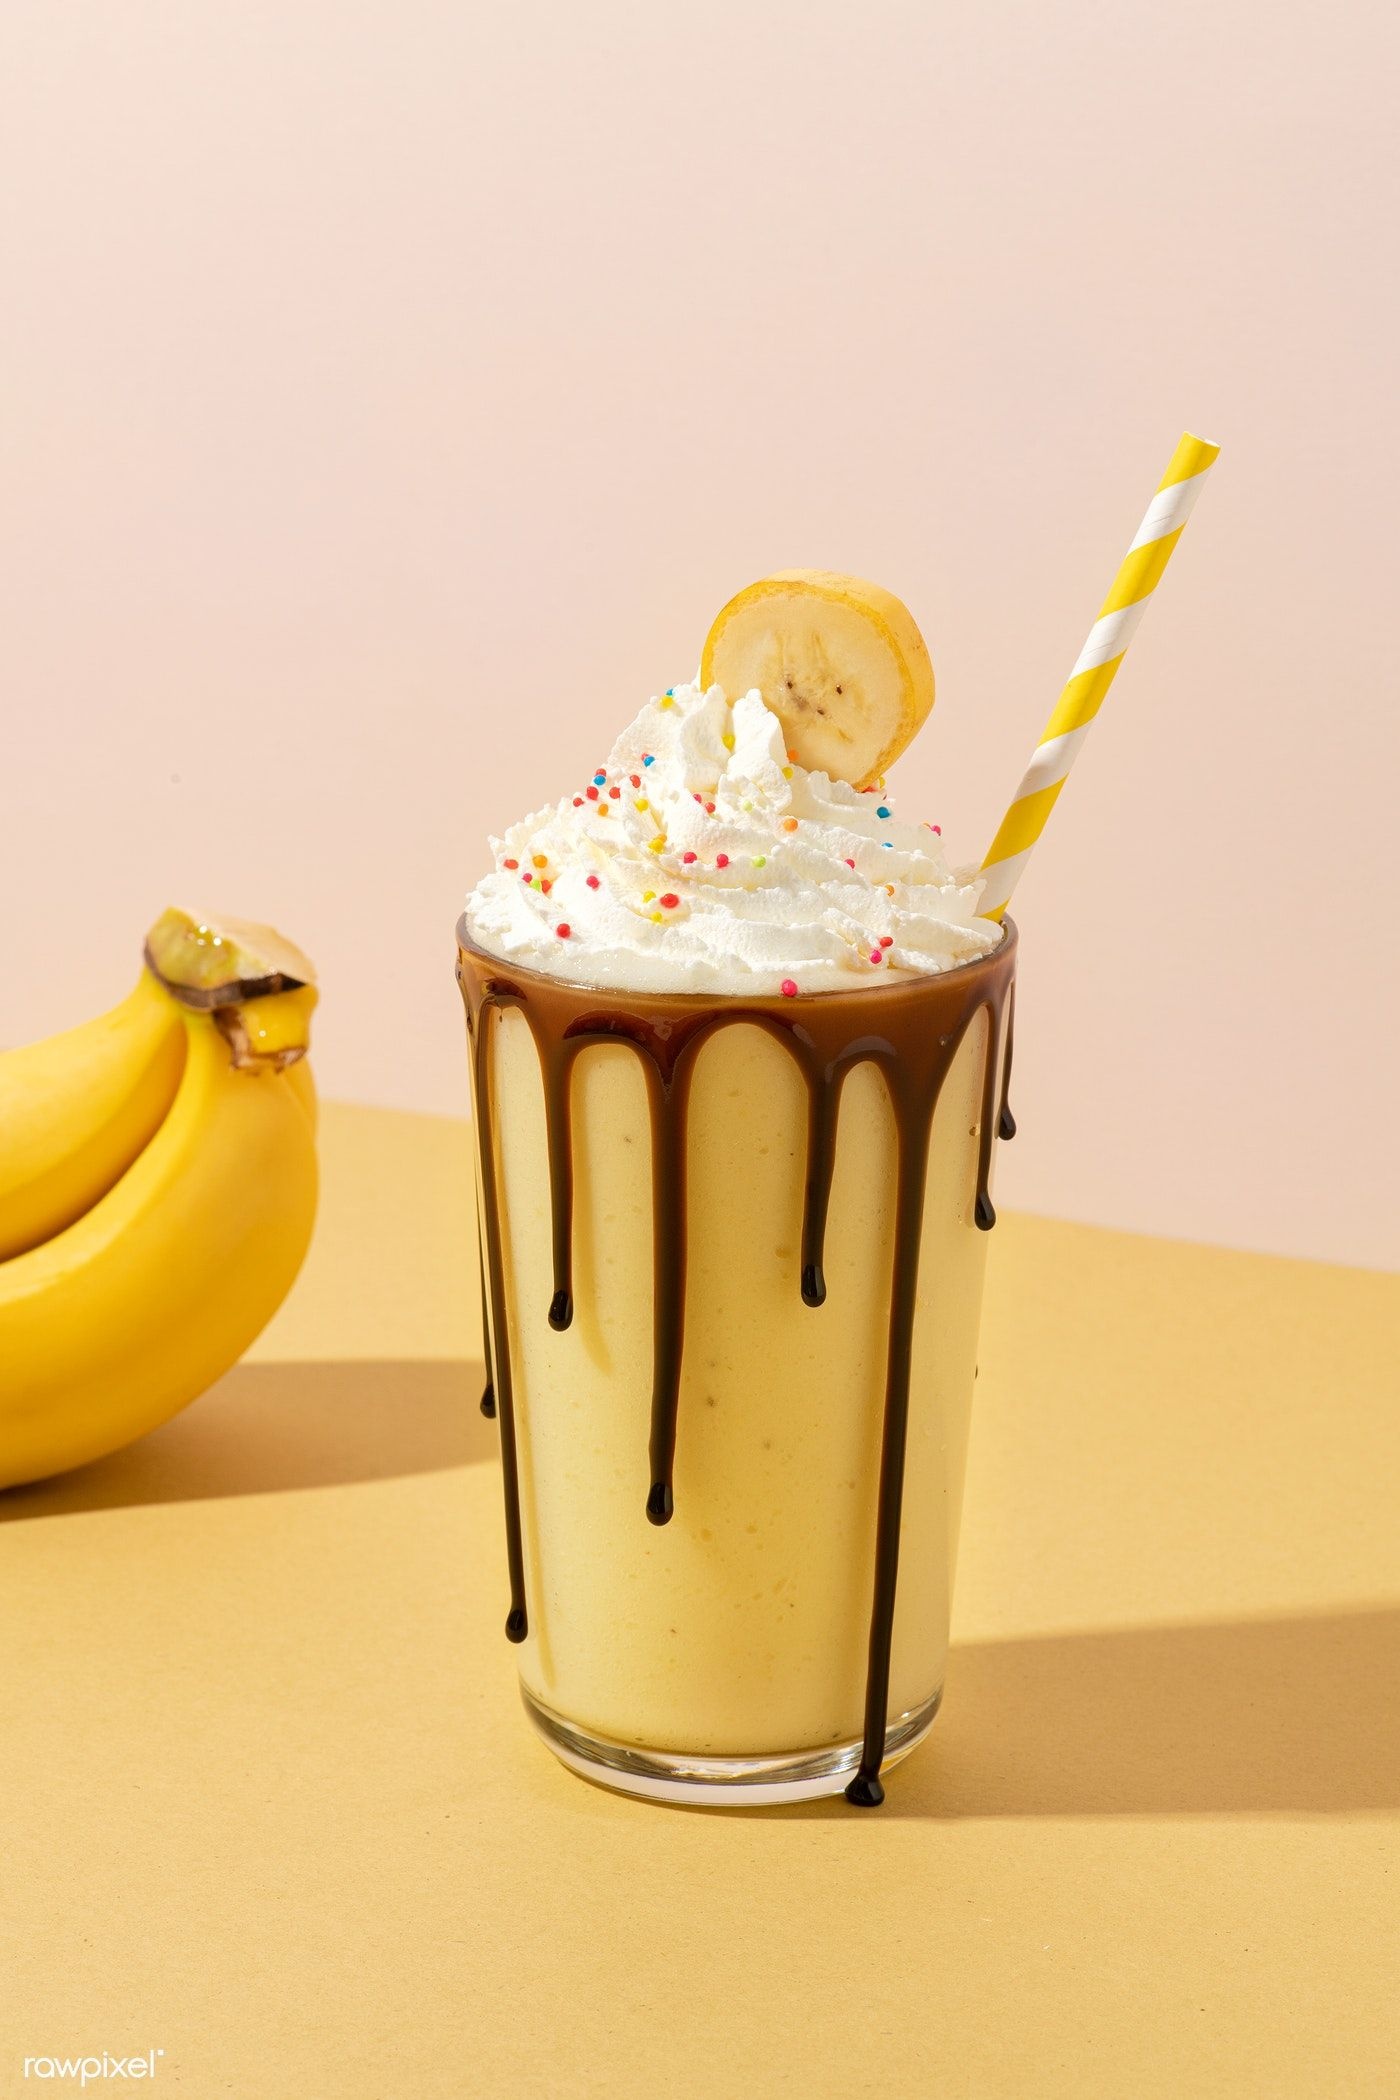 Milkshake: Chocolate banana shake with whipped cream. 1400x2100 HD Background.